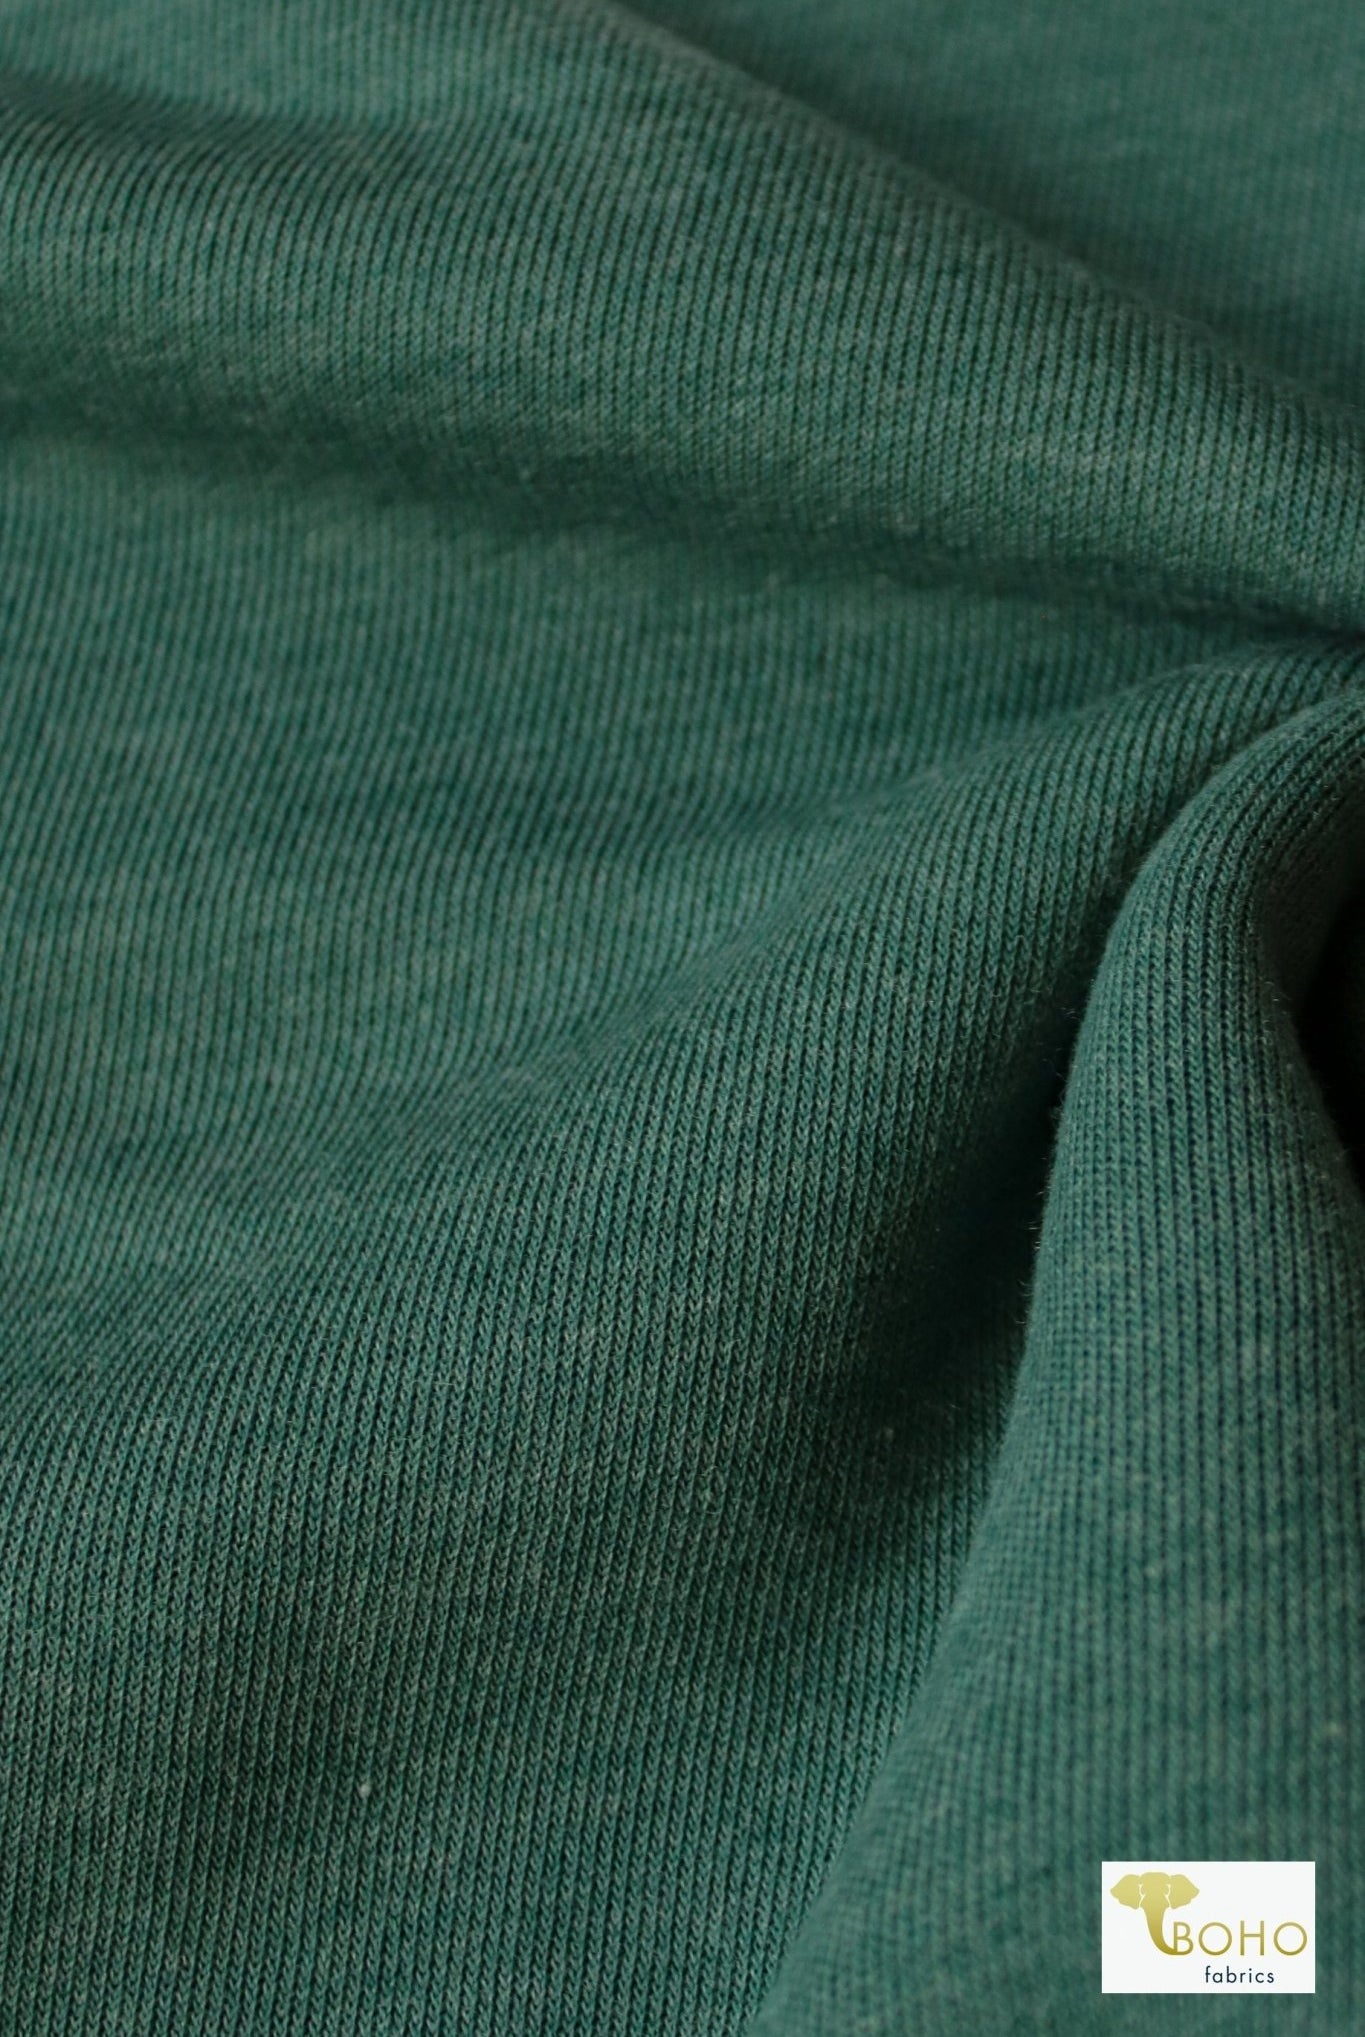 1x1 Rib Knit, Jasper Green. SOLD BY THE HALF YARD! - Boho Fabrics